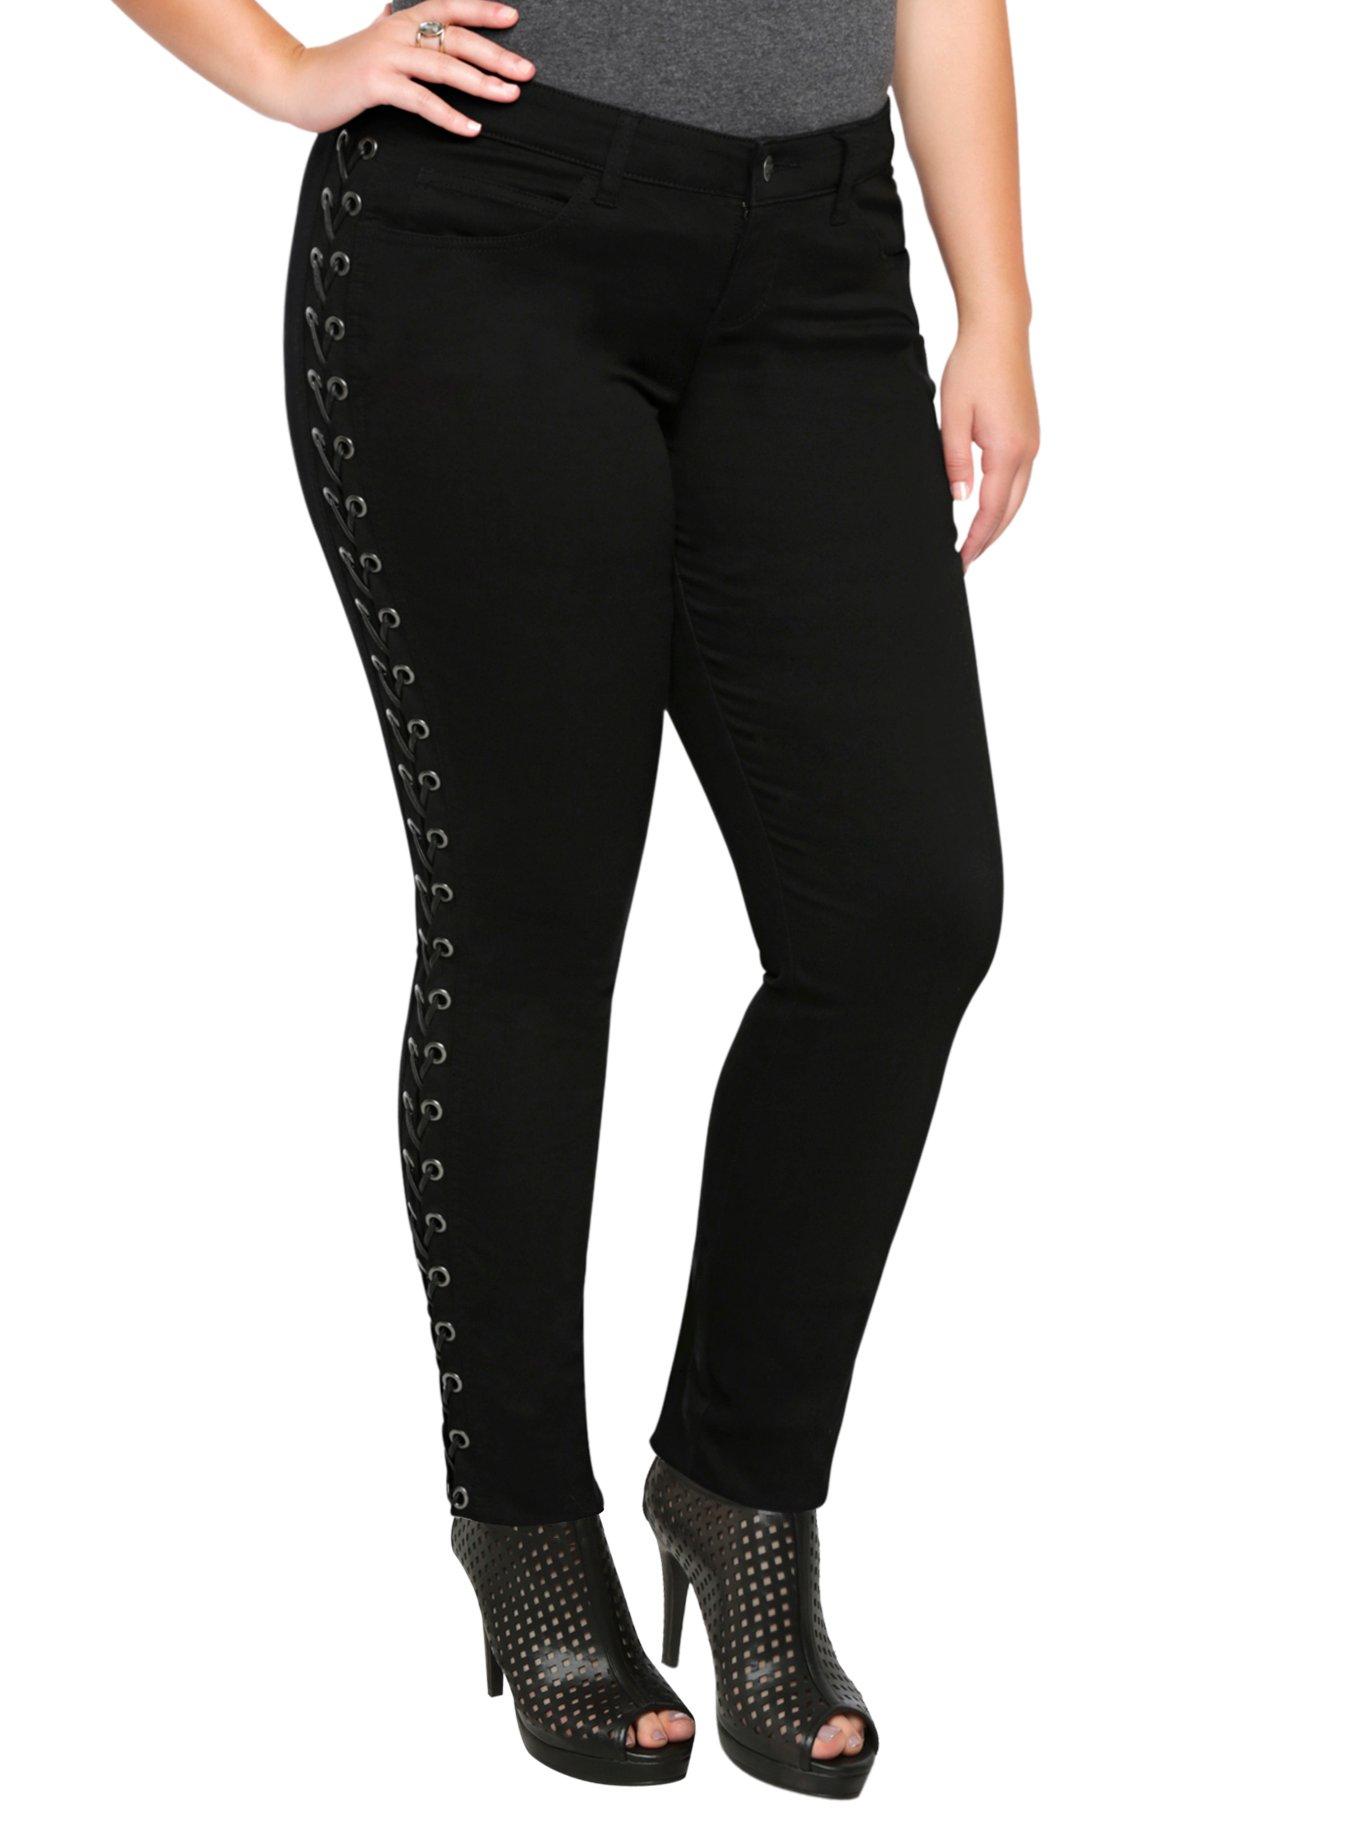 Tripp Black Lace-Up Pants Plus Size